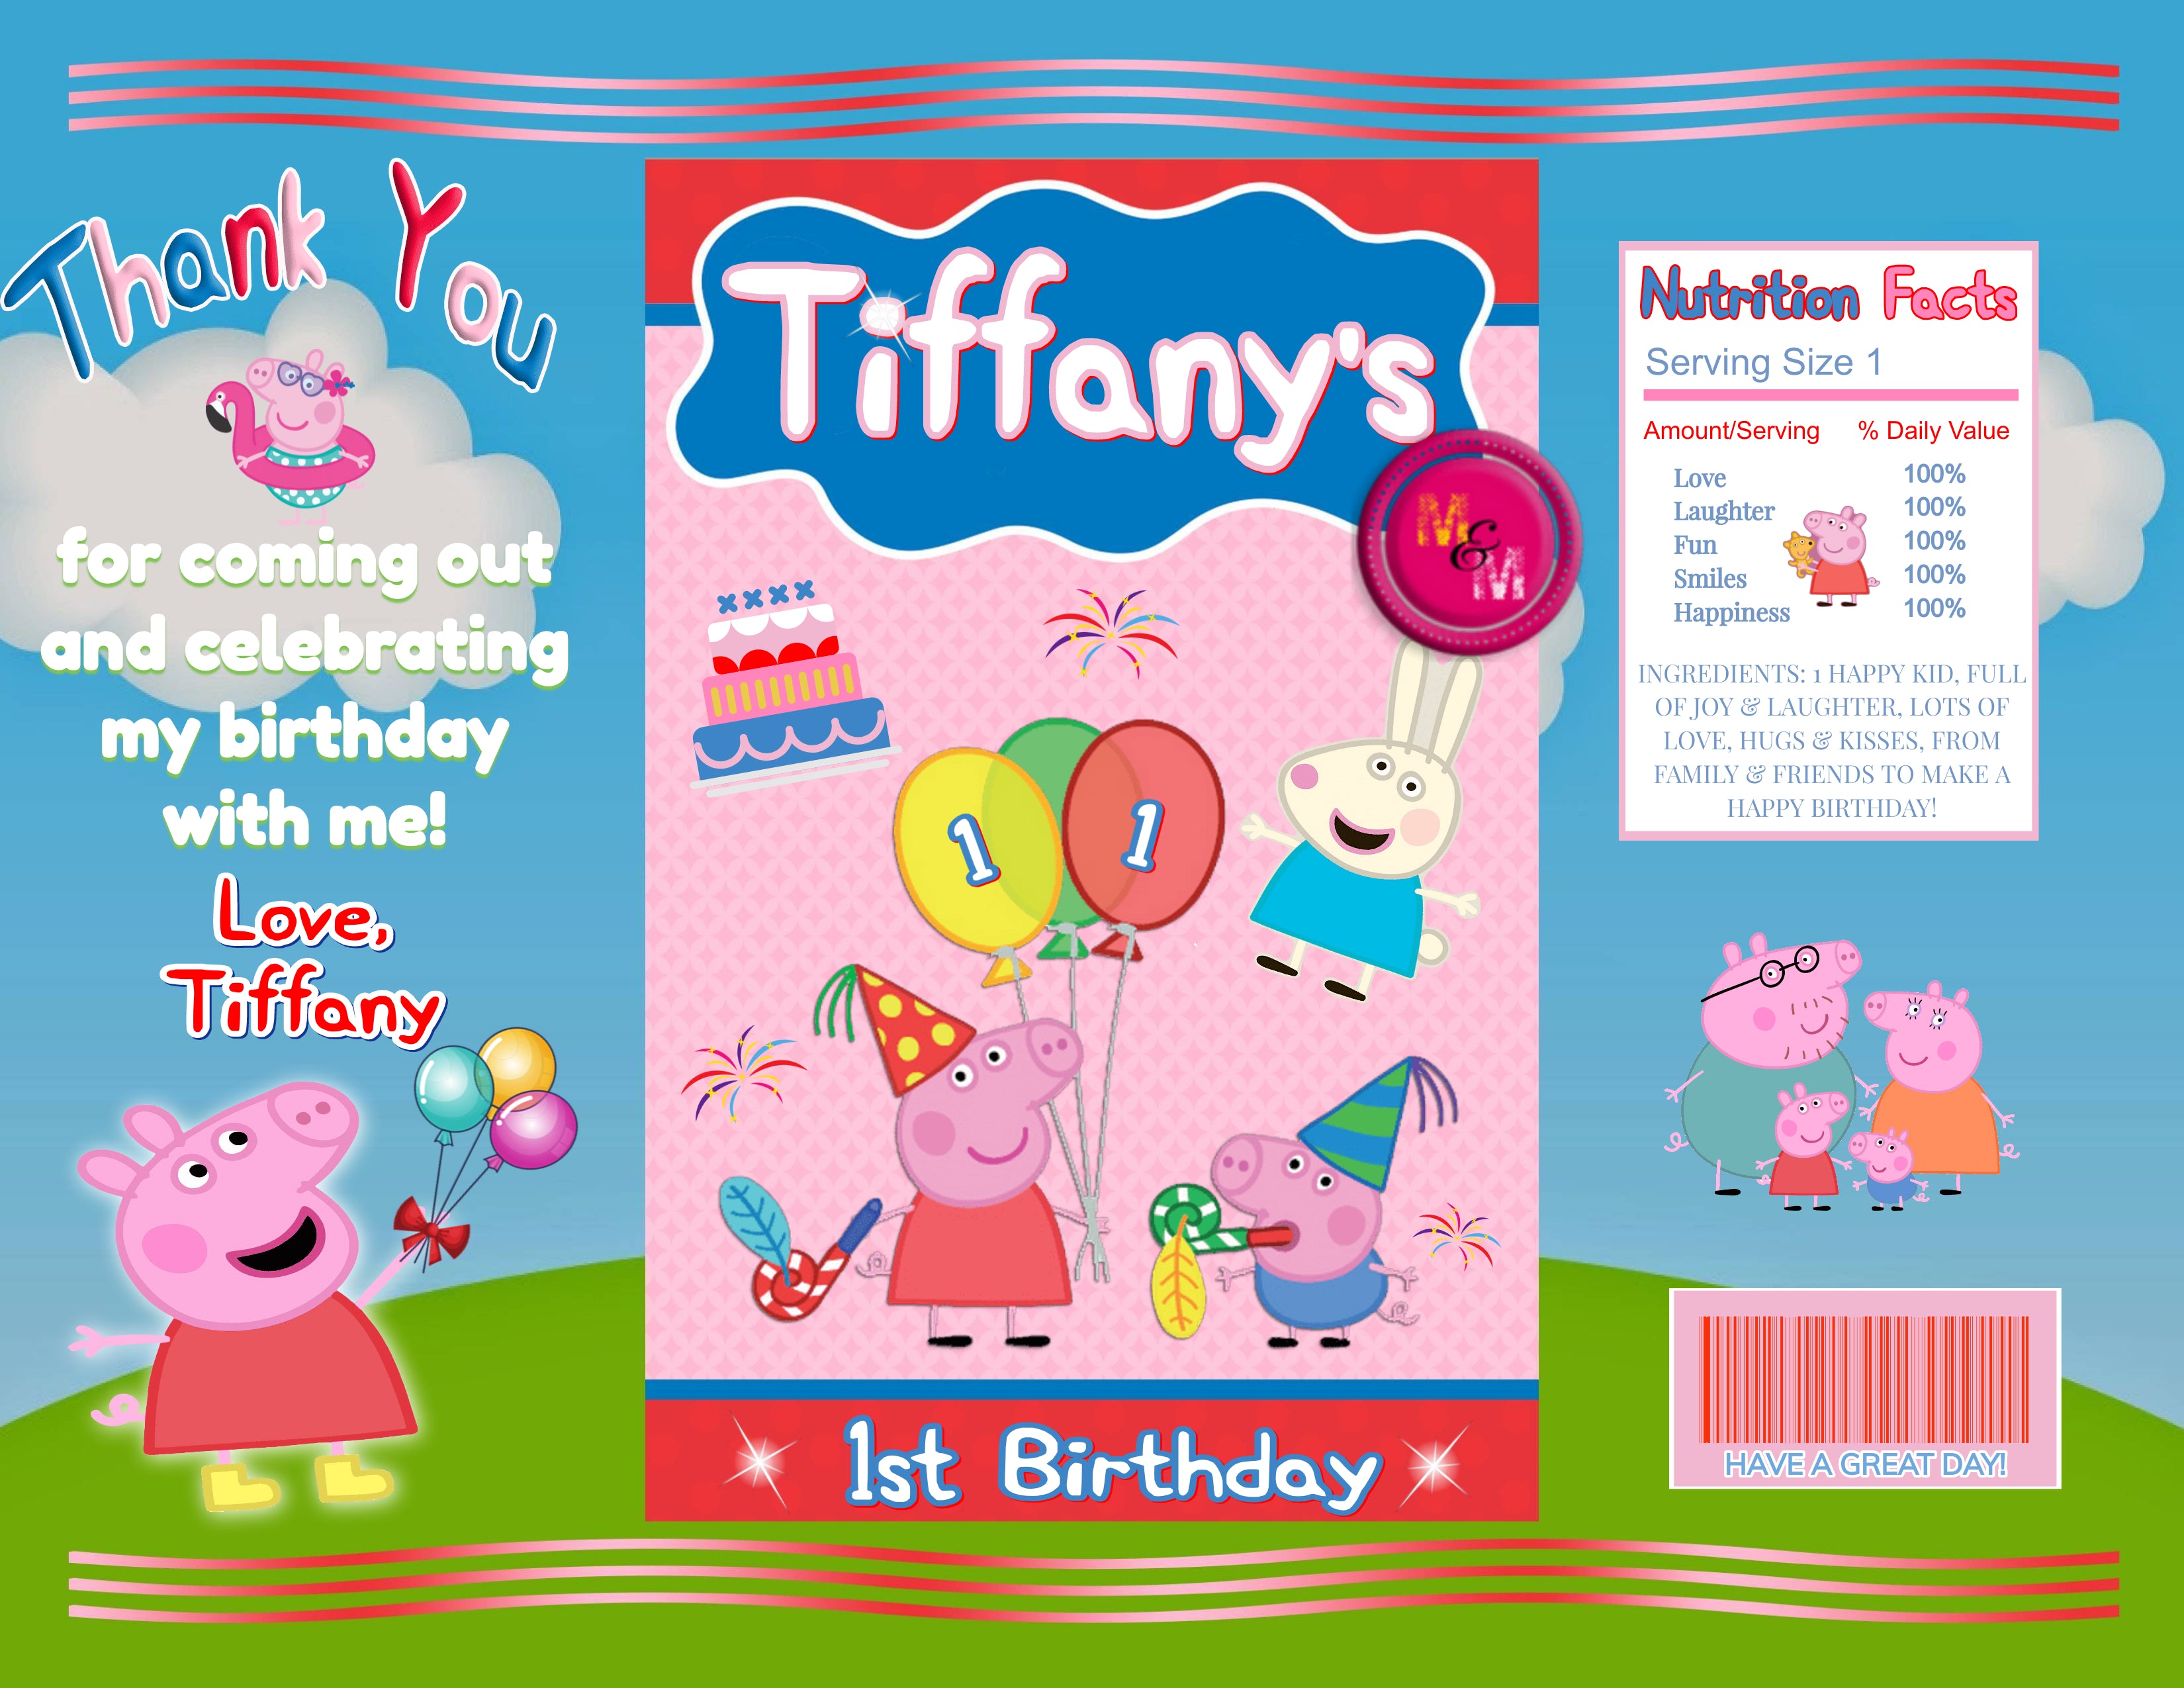 Editable Little Piggy Birthday Chip Bag & Juice Pouch Label Set, Little Piggy Capri Sun Labels,  Little Piggy Birthday Printables